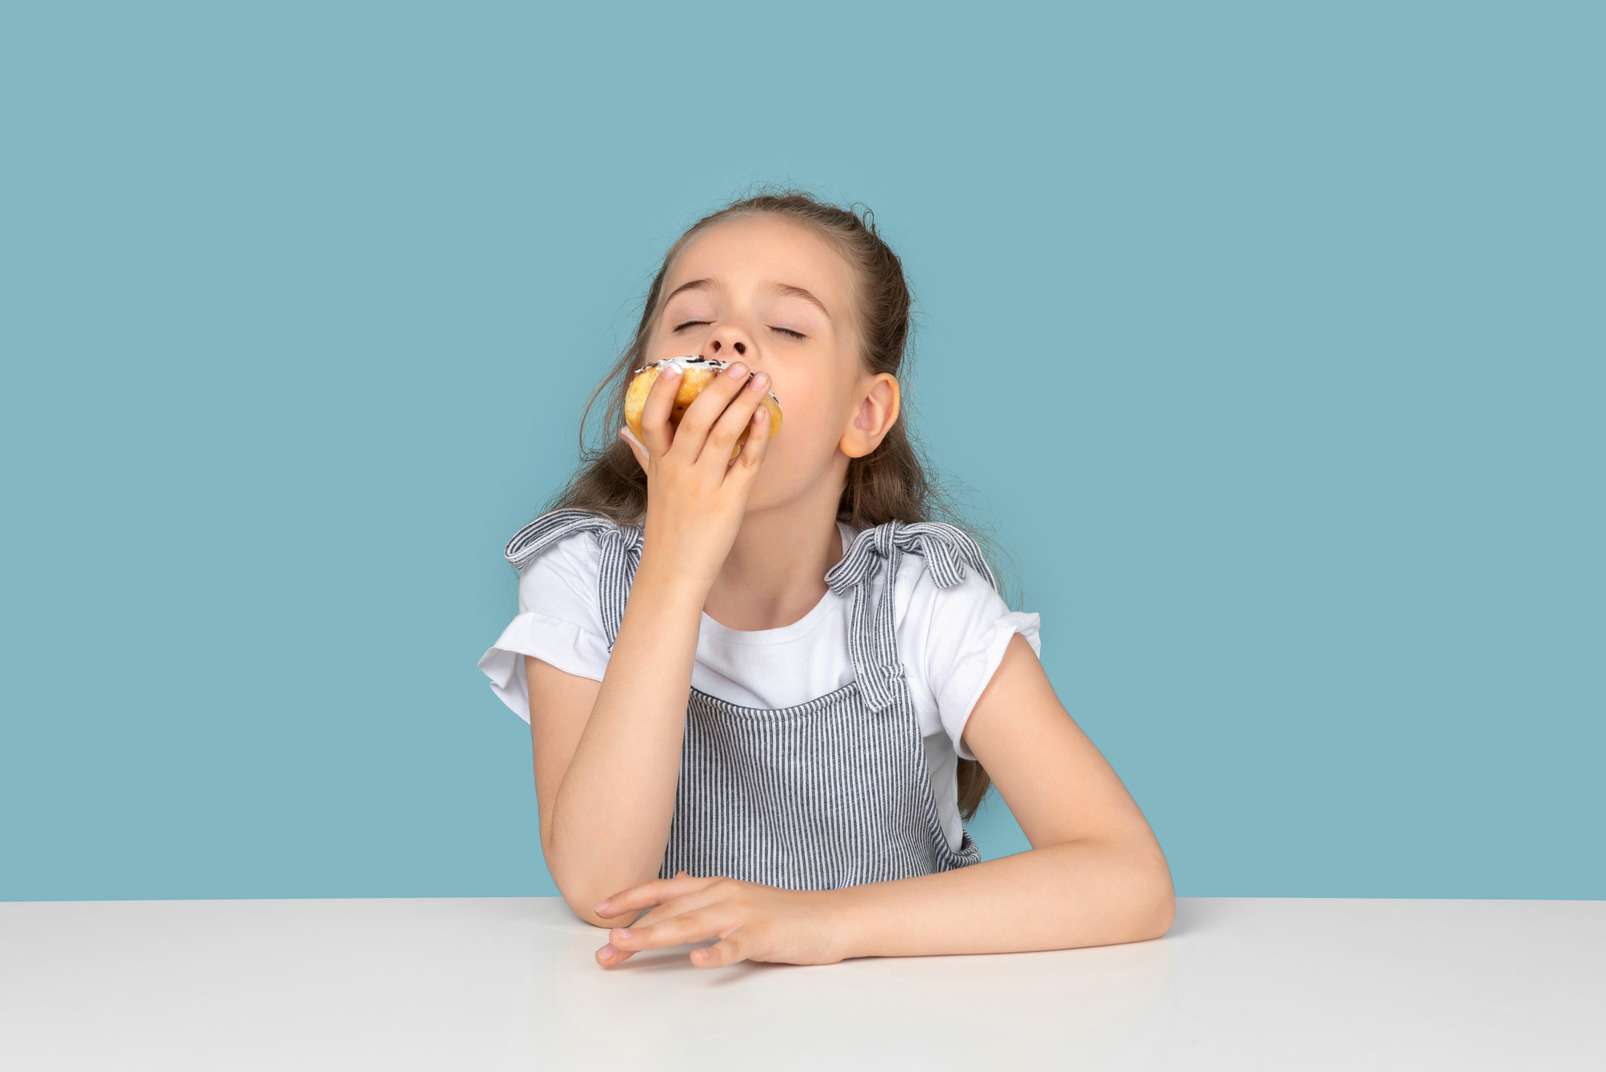 Cute little girl enjoying a doughnut